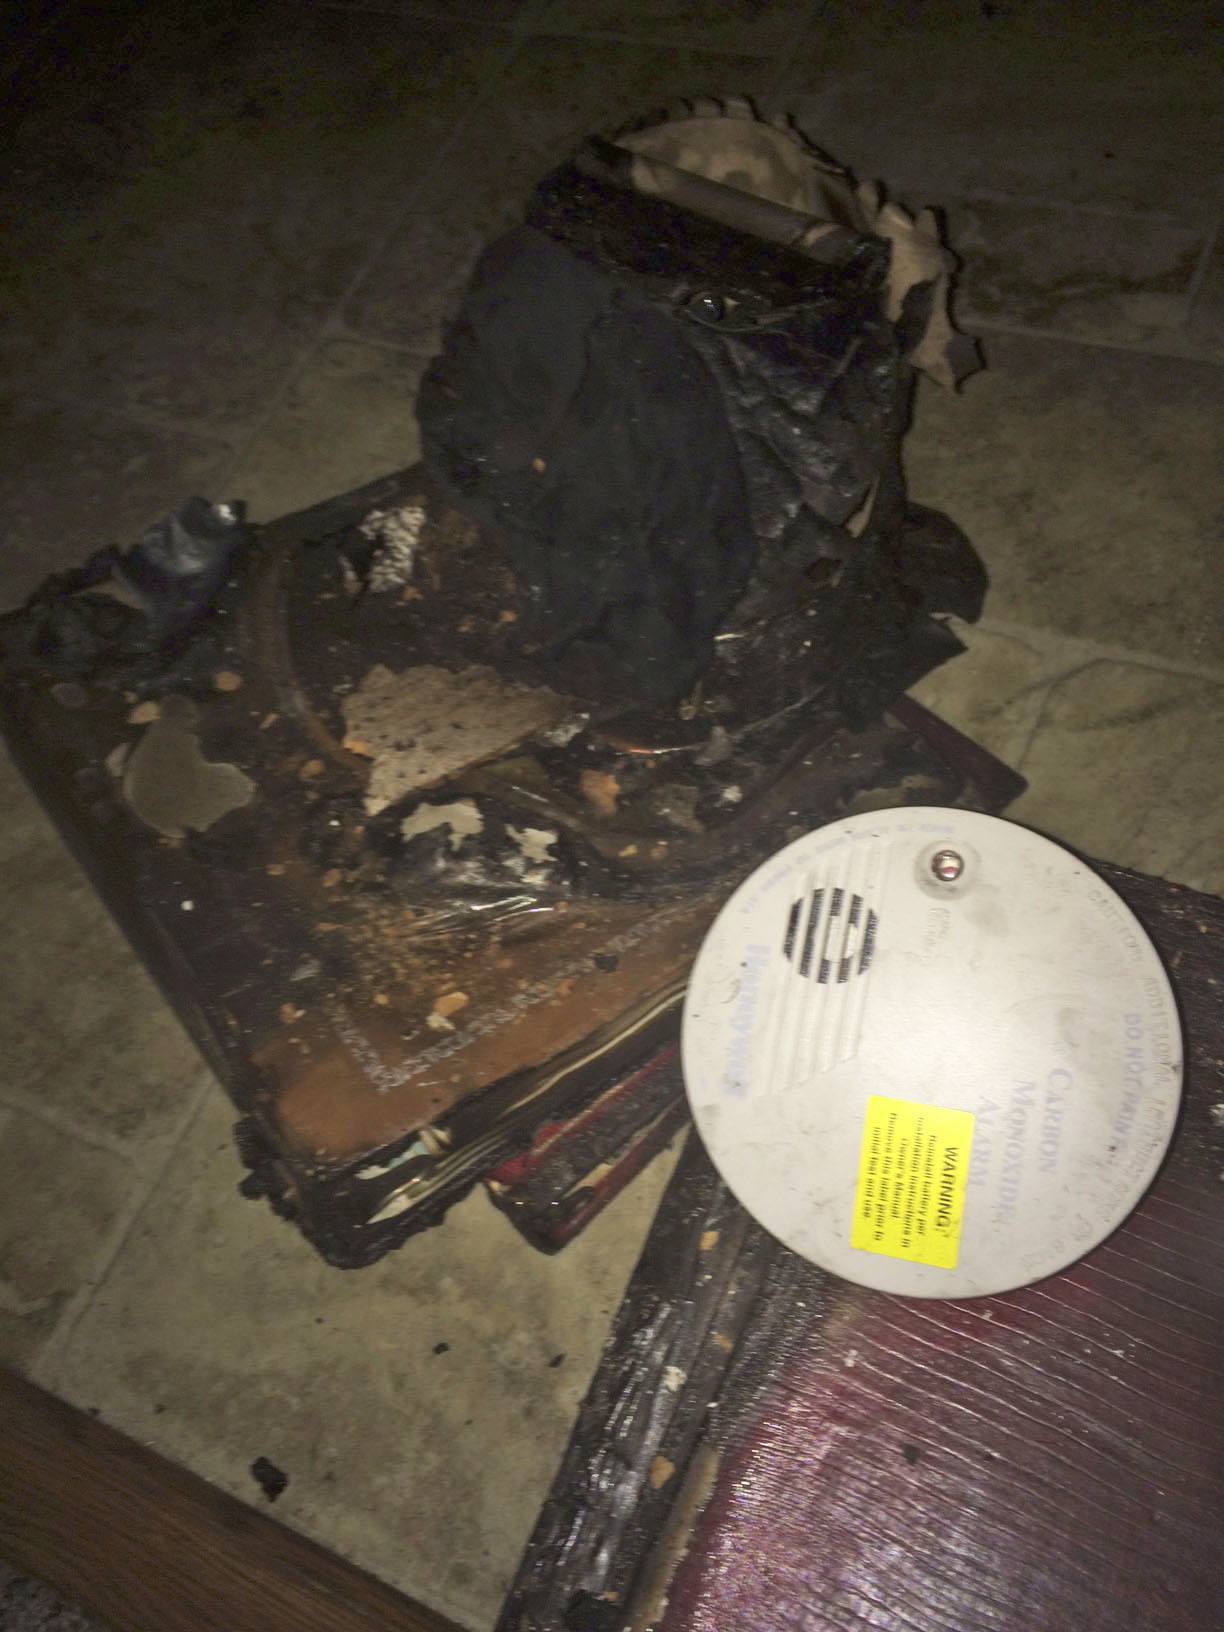 A carbon monoxide alarm survived the fire